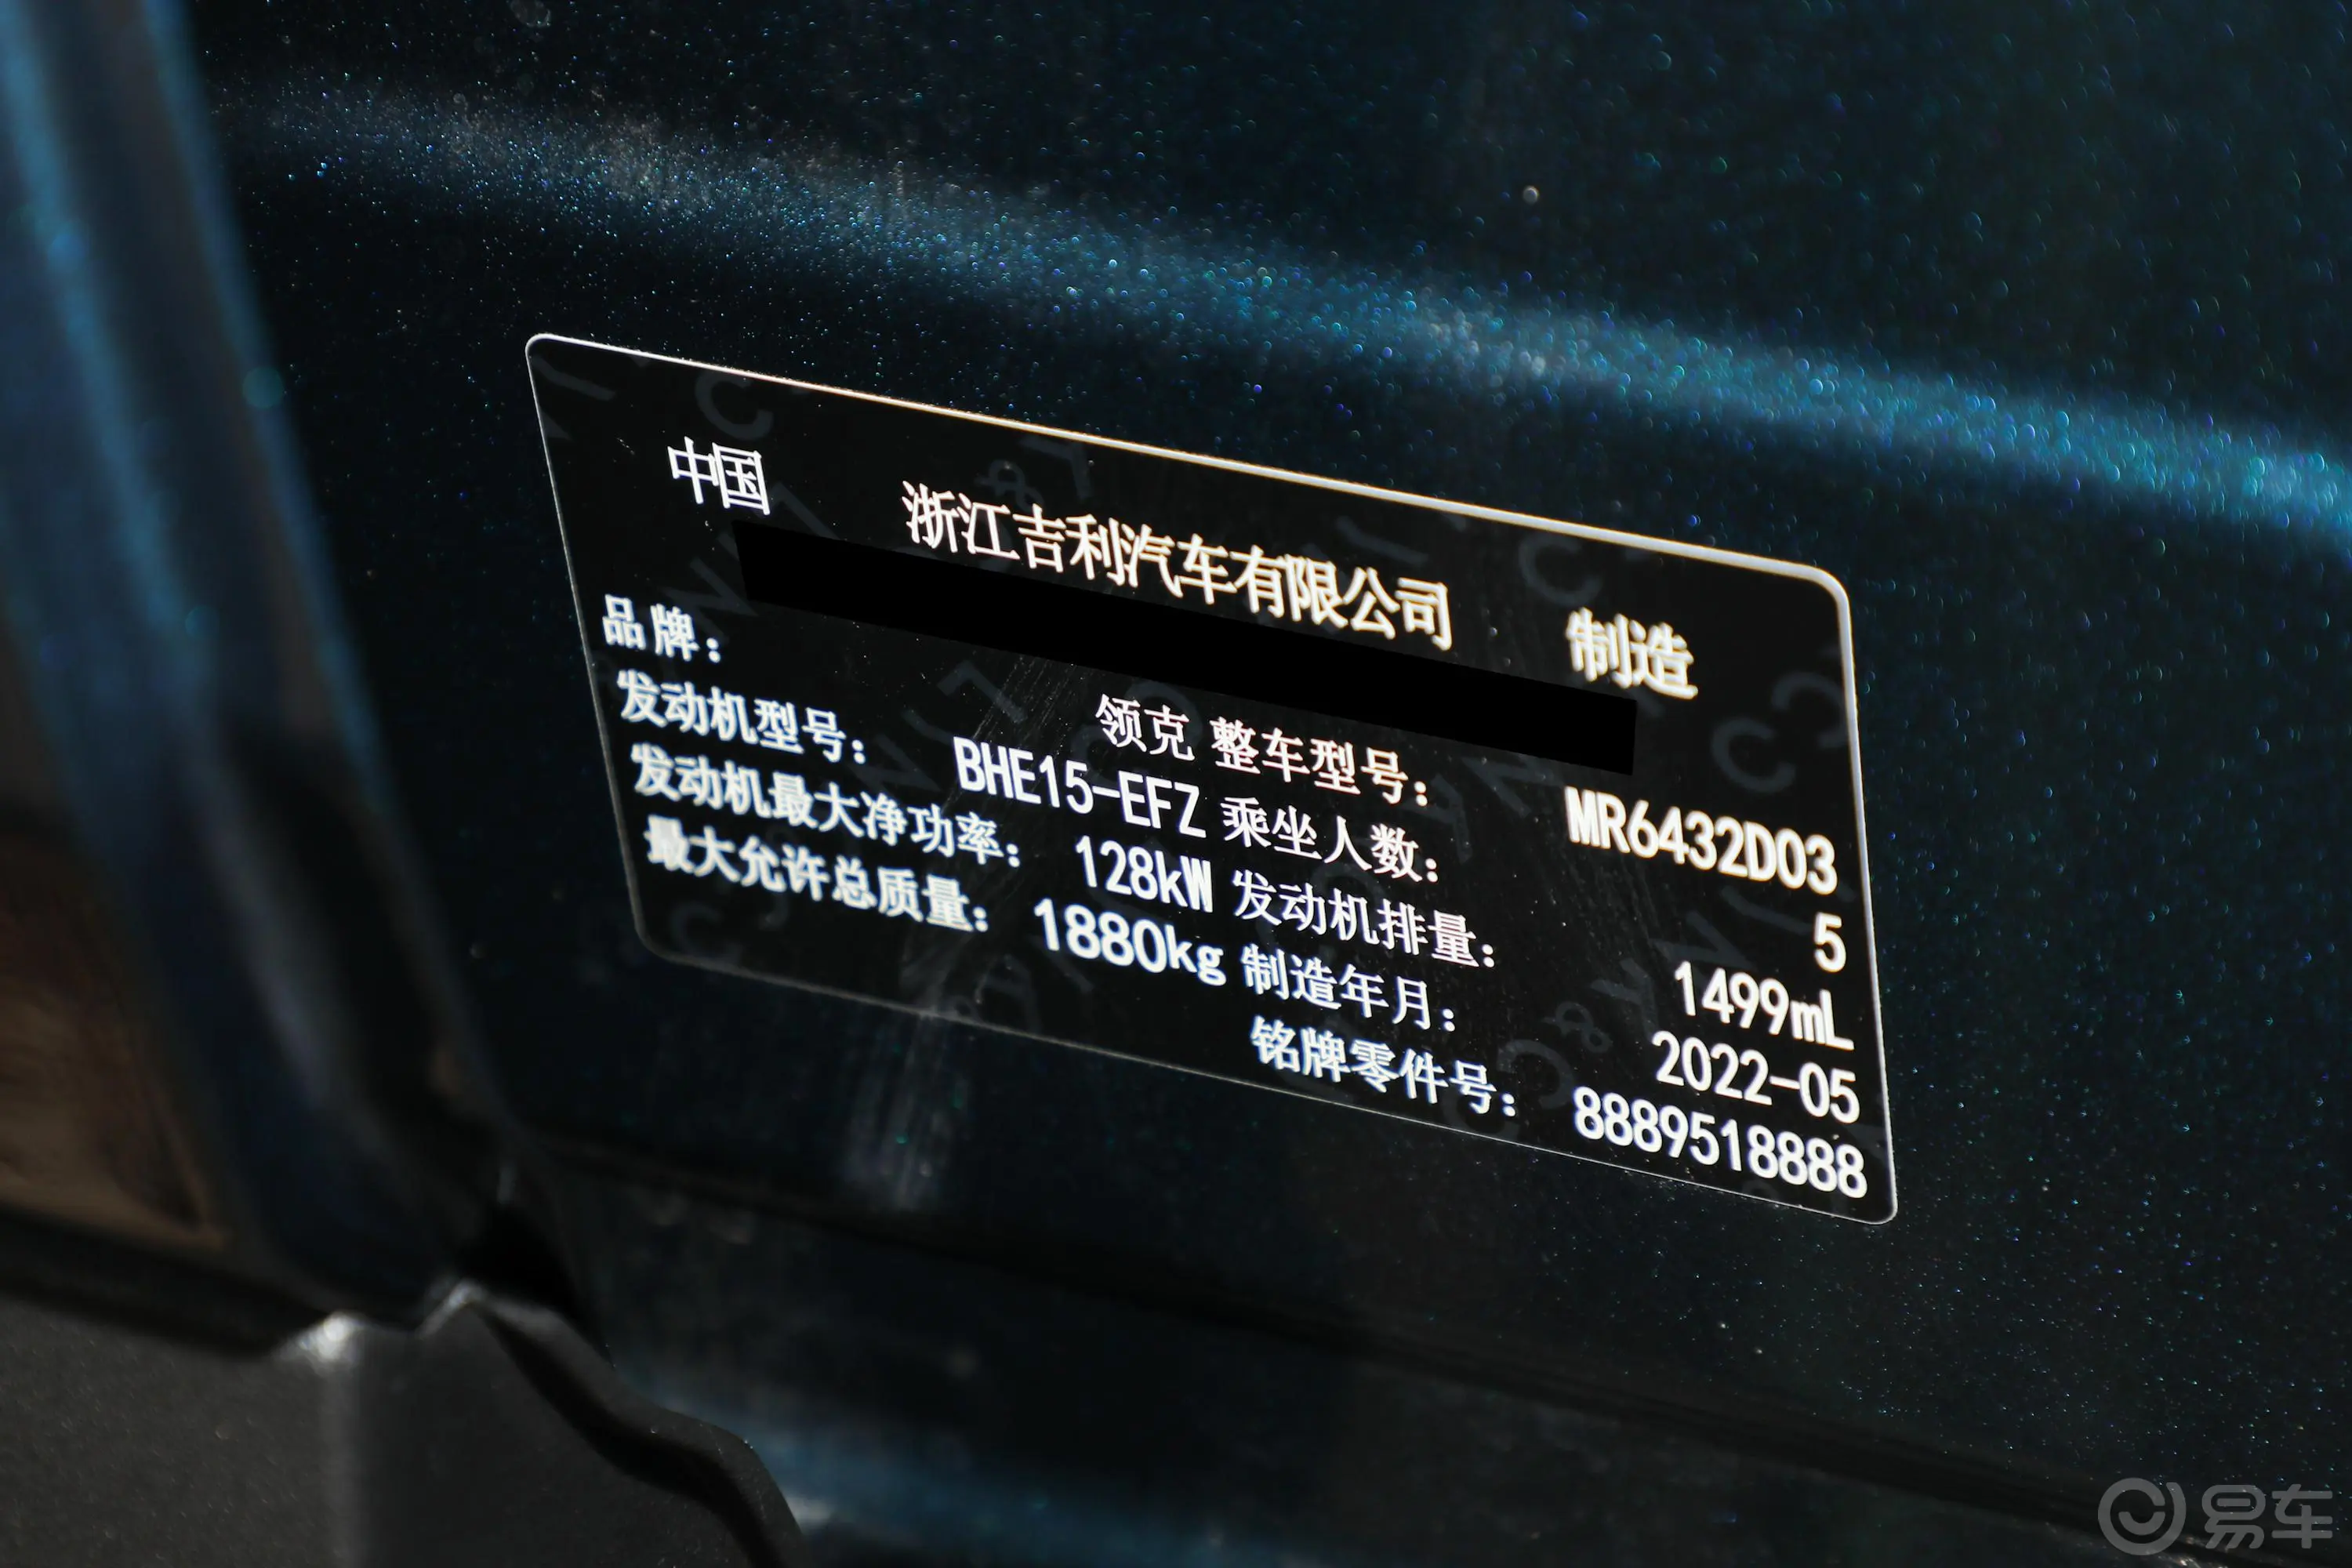 领克06Remix 1.5T 耀Halo车辆信息铭牌